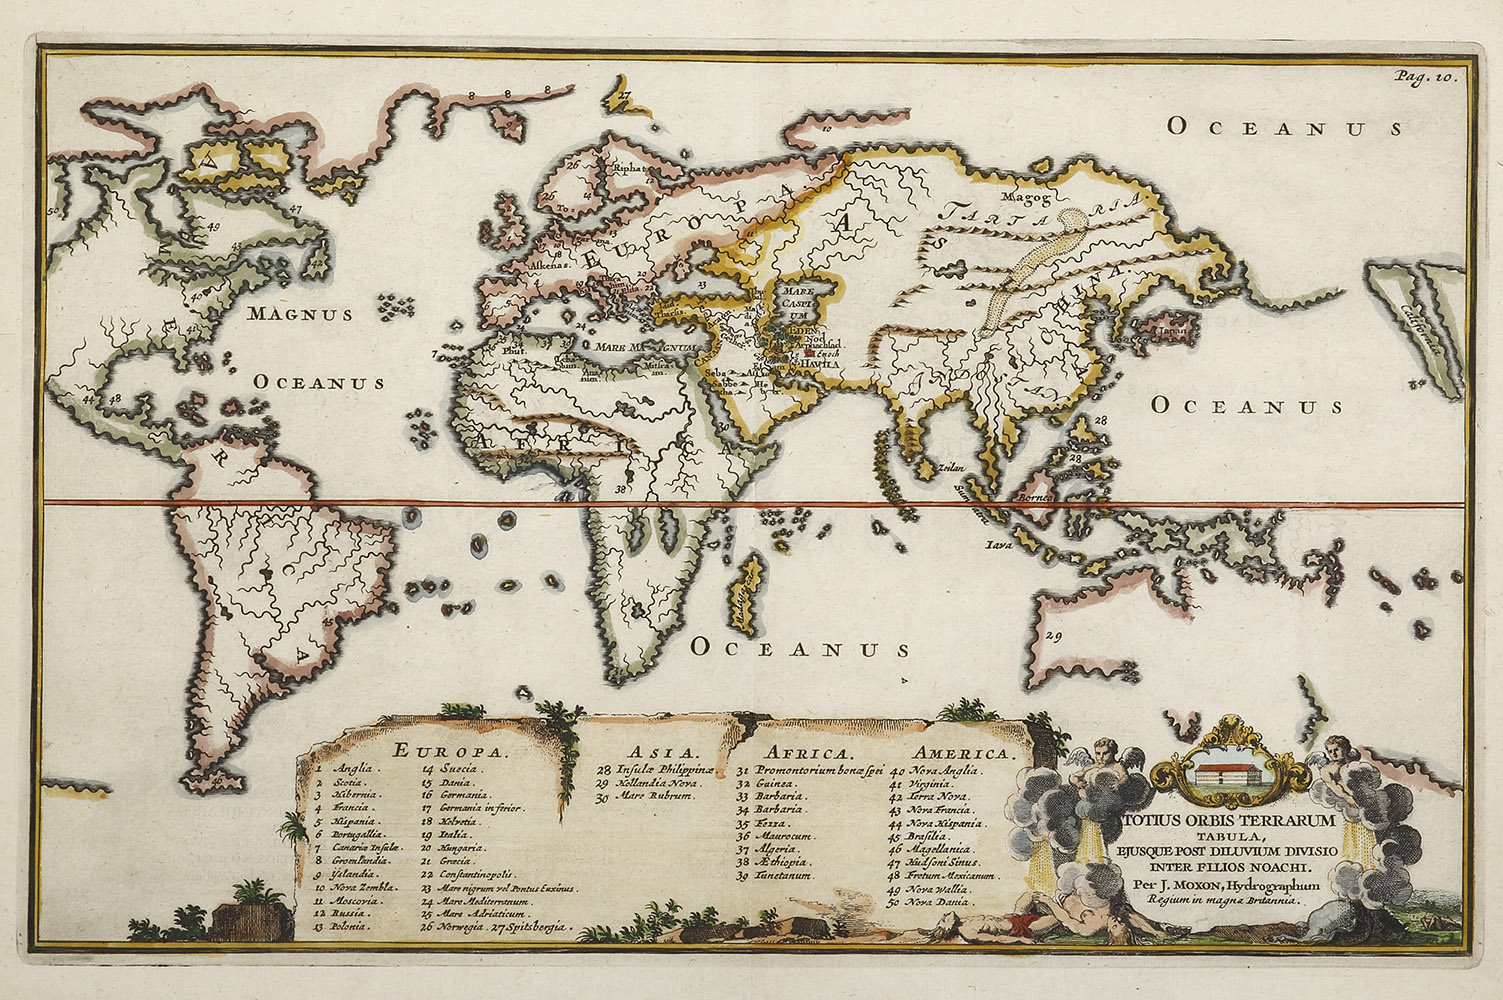 Totius Orbis Terrarum Tabula, Ejusque Post Diluvium Divisio Inter Filios Noachi. - Antique Map from 1671